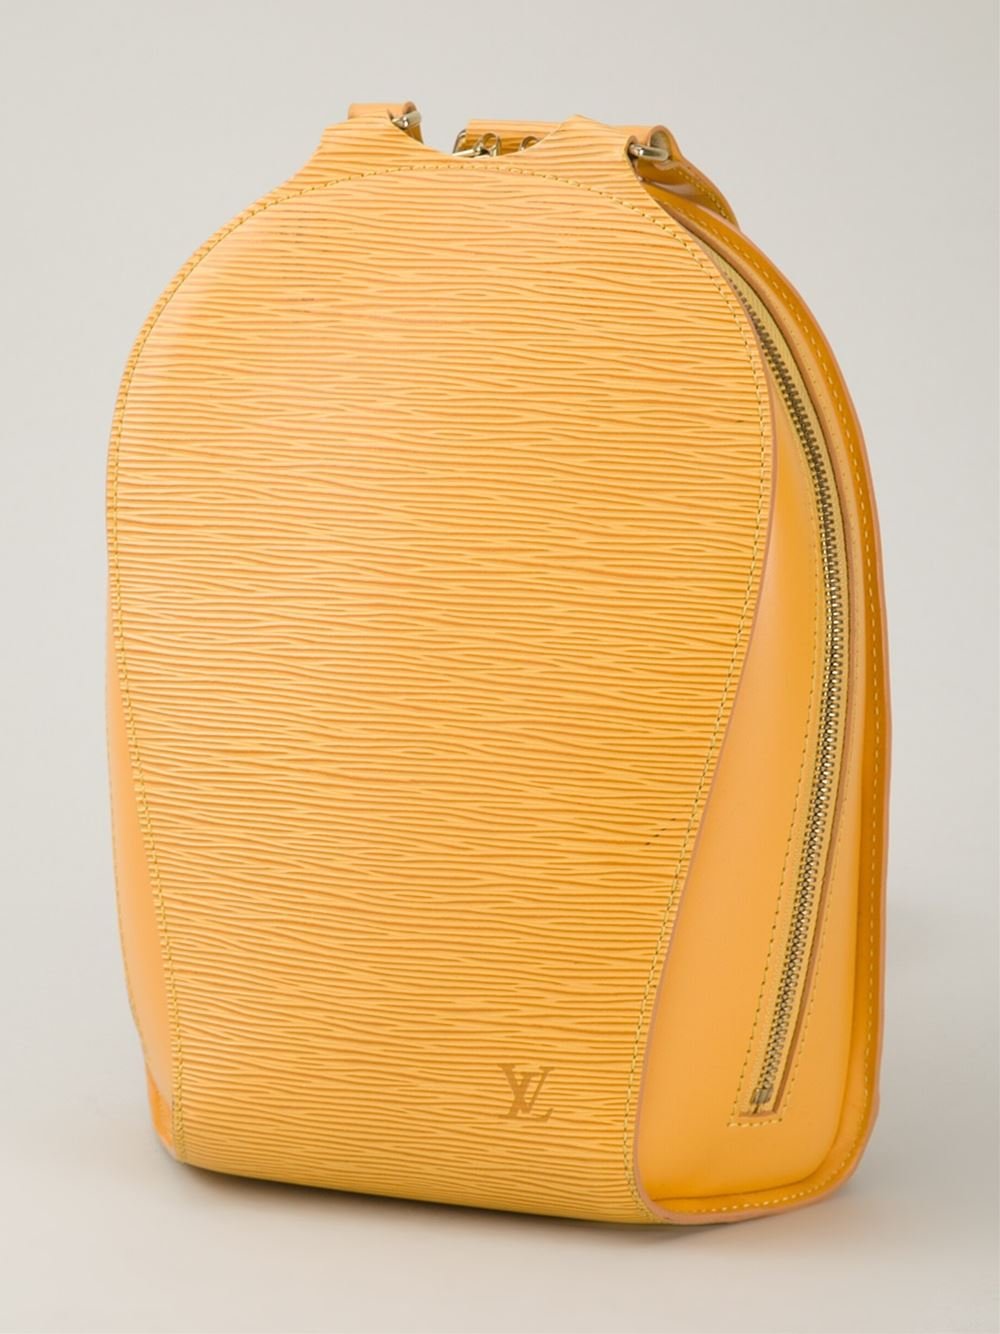 leather backpack epi